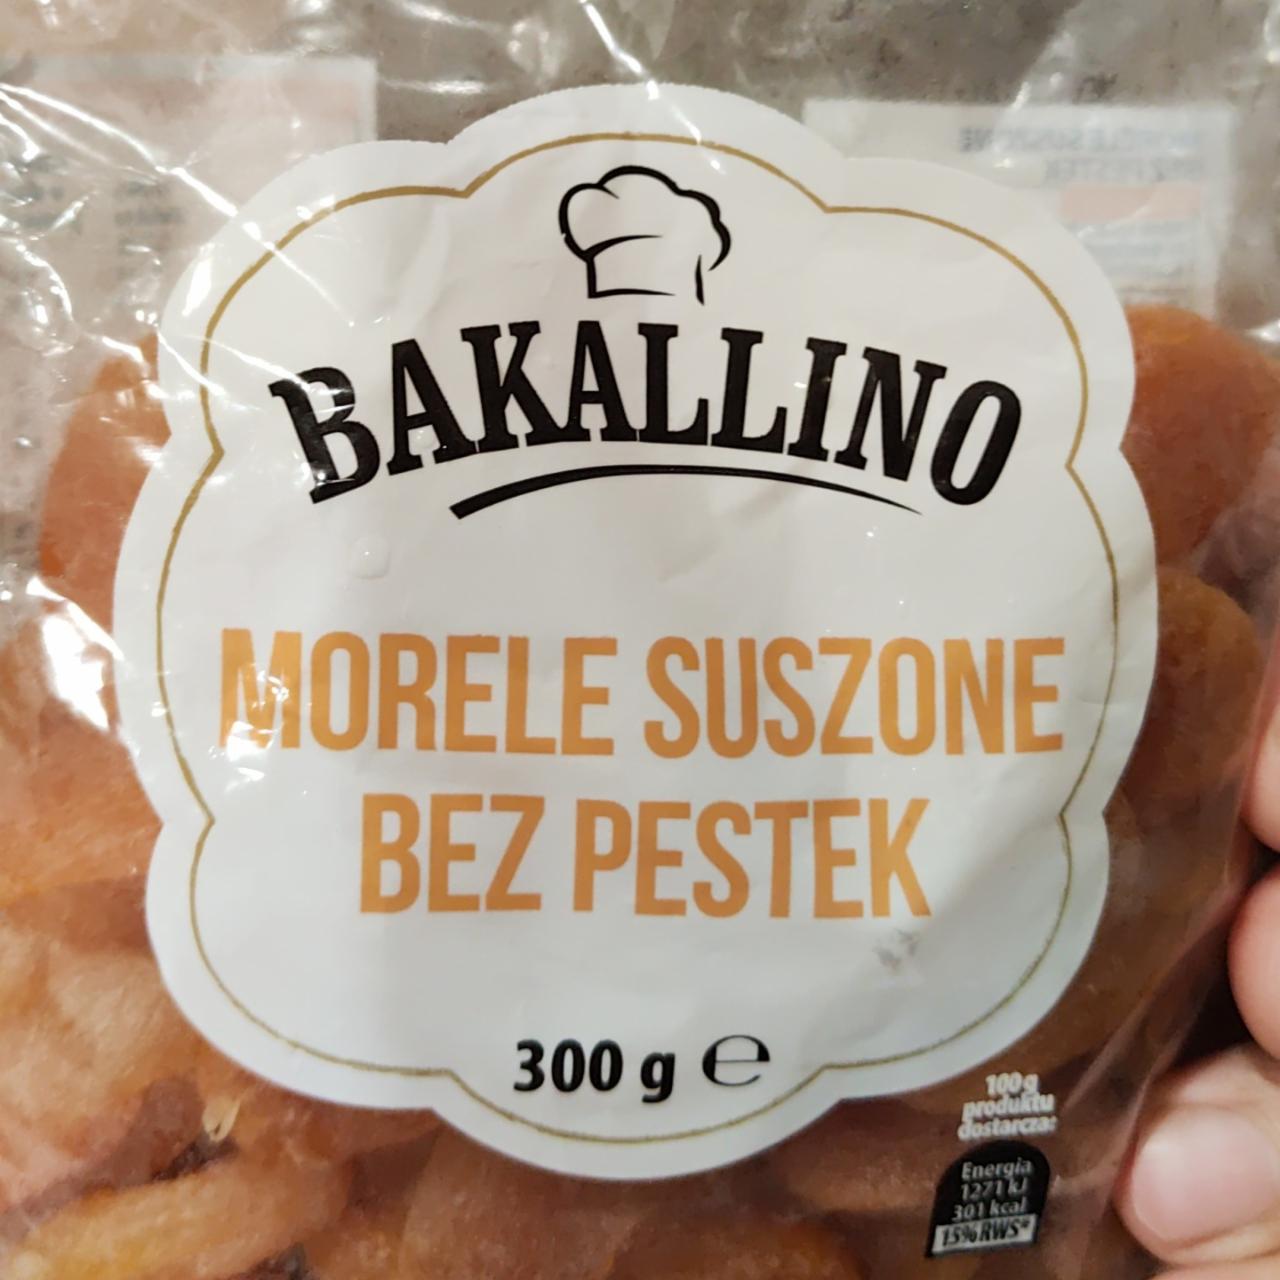 Fotografie - Morele suszone bez pestek (sušené meruňky bez pecek) Bakallino